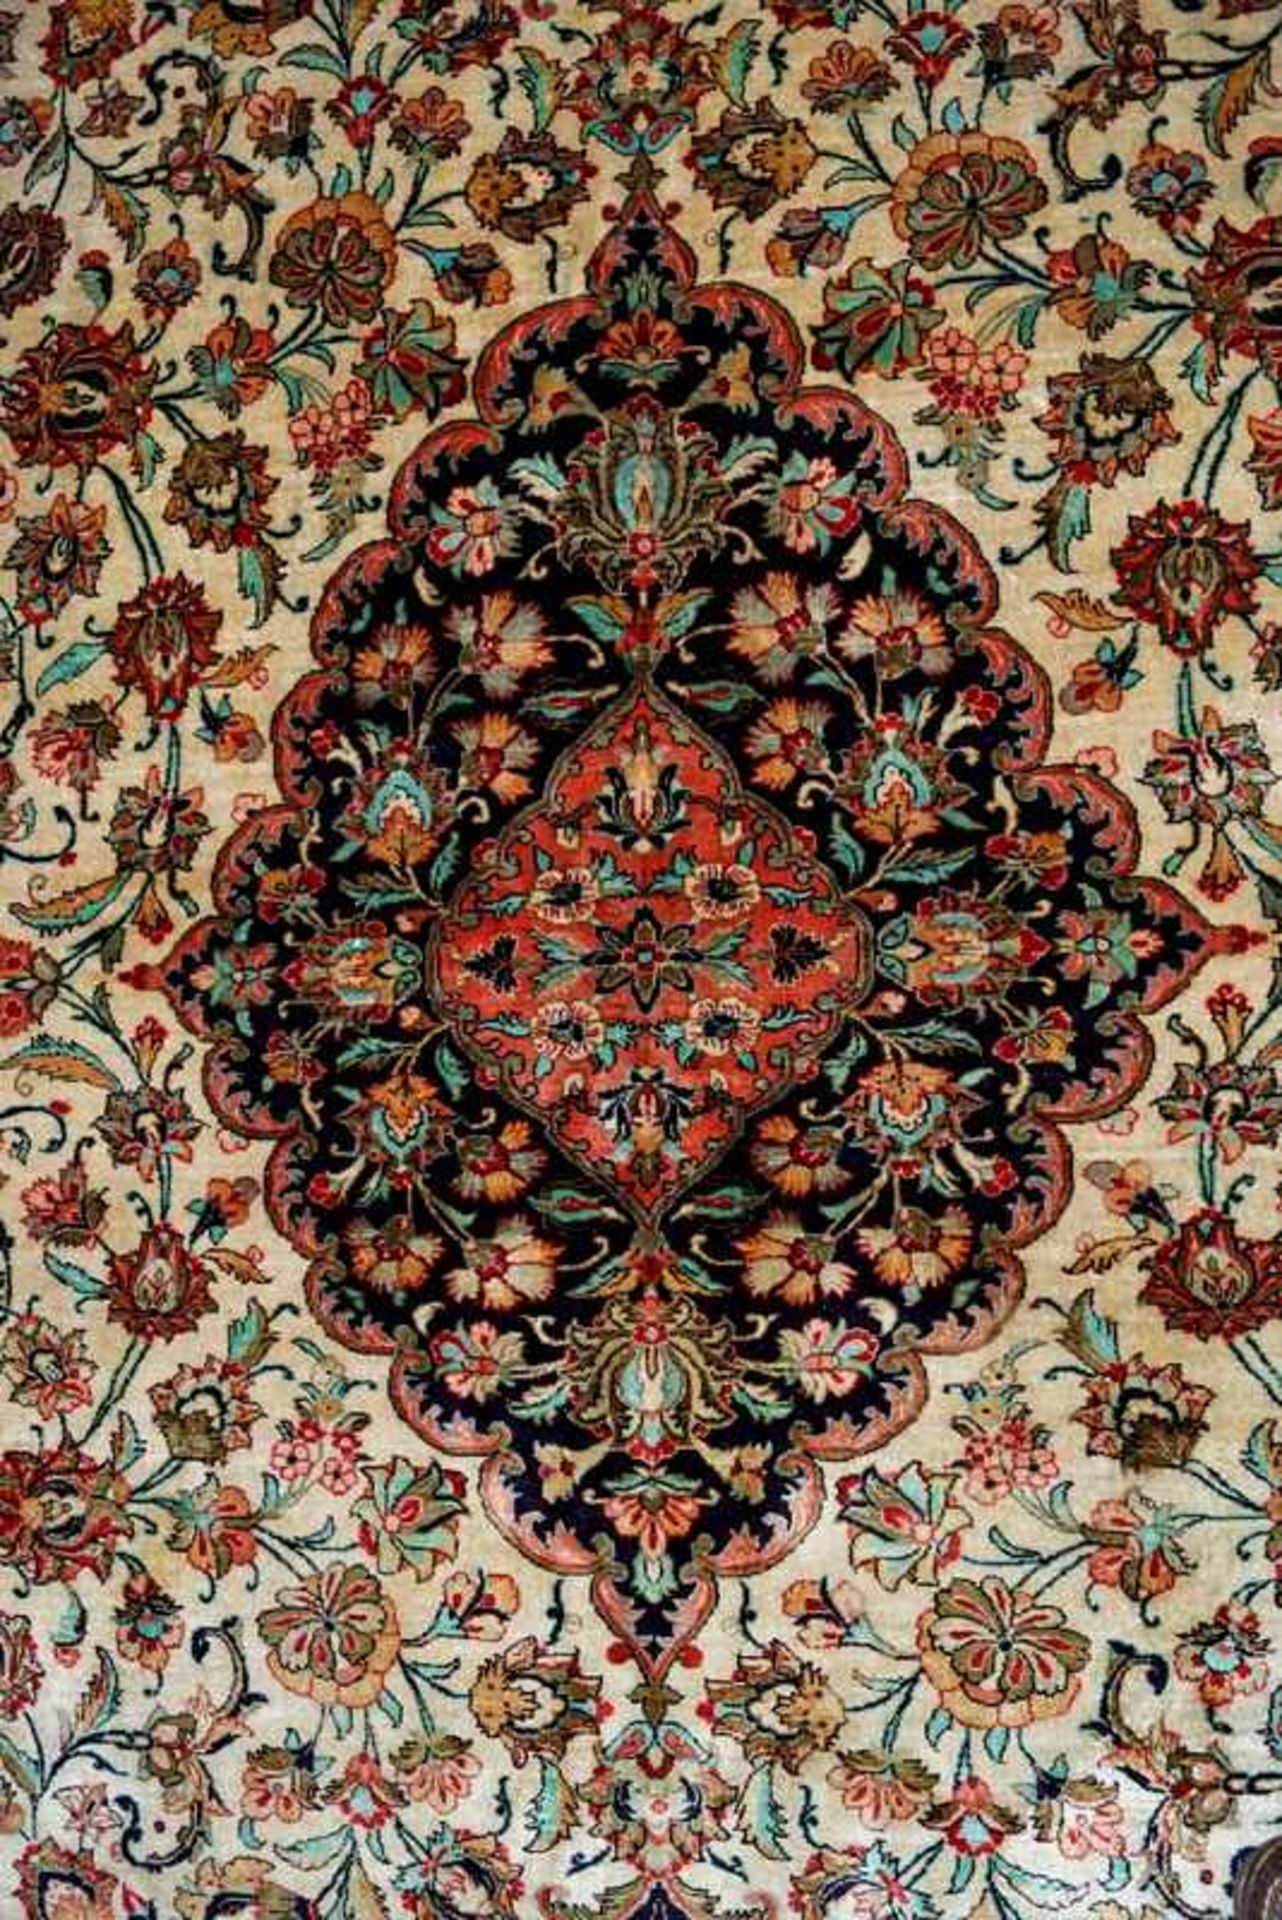 Großer Persischer Seidenteppich 303 x 204cm, Seide auf Seide, guter Zustand, sehr feine Knüpfung ca. - Bild 4 aus 5